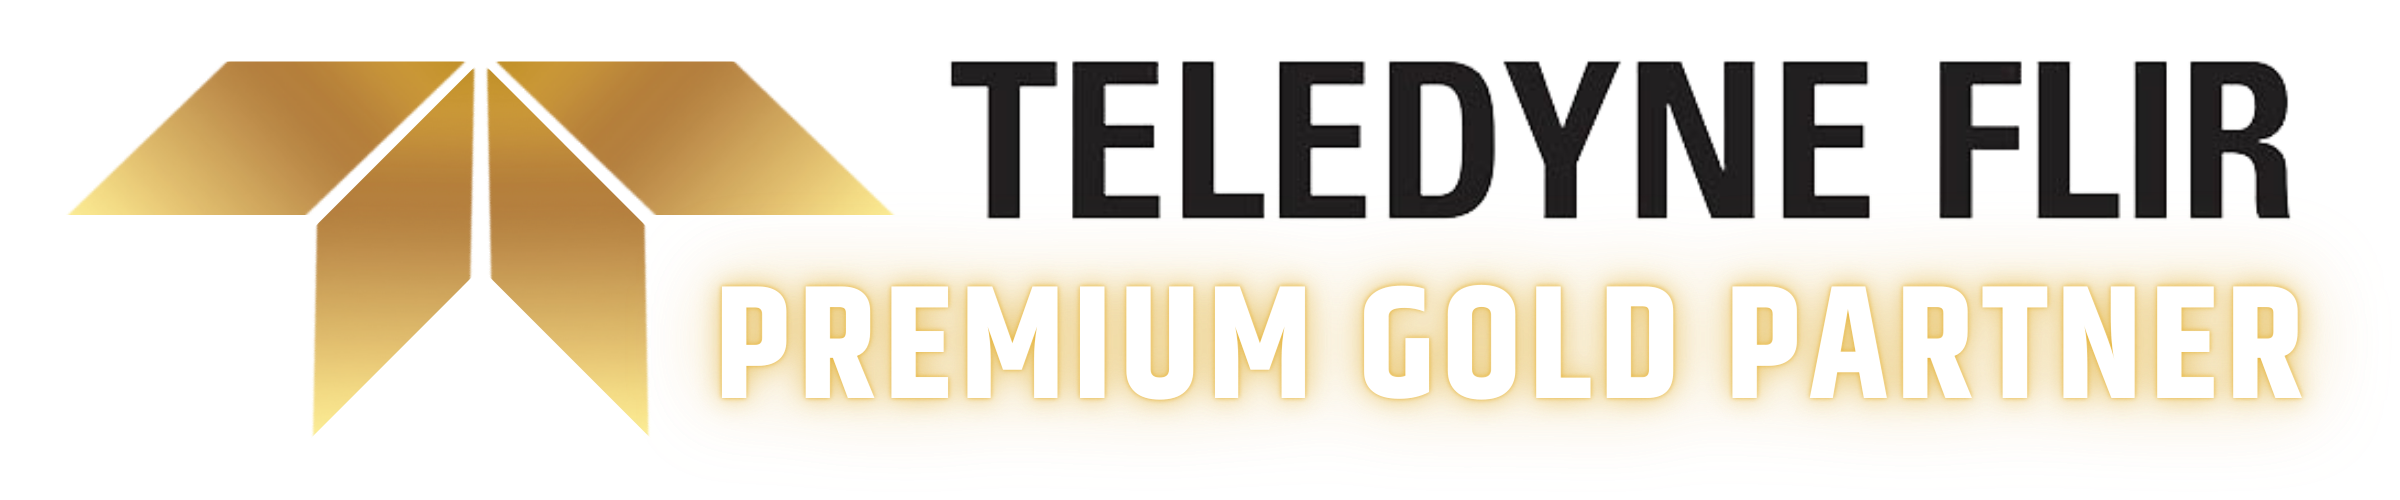 Teledyne Flir Premium Gold Partner Image